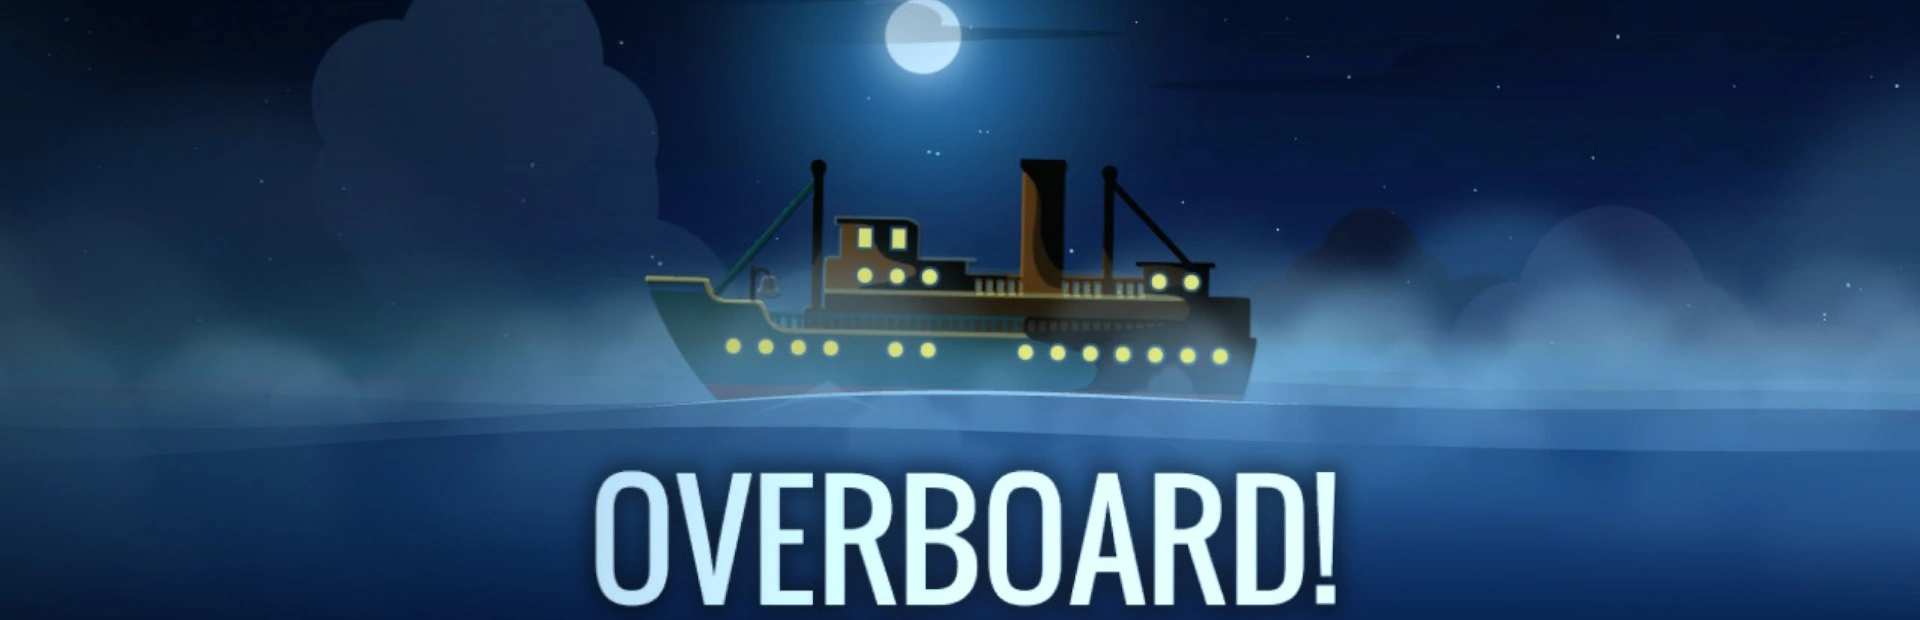 دانلود بازی Overboard برای کامپیوتر | گیمباتو